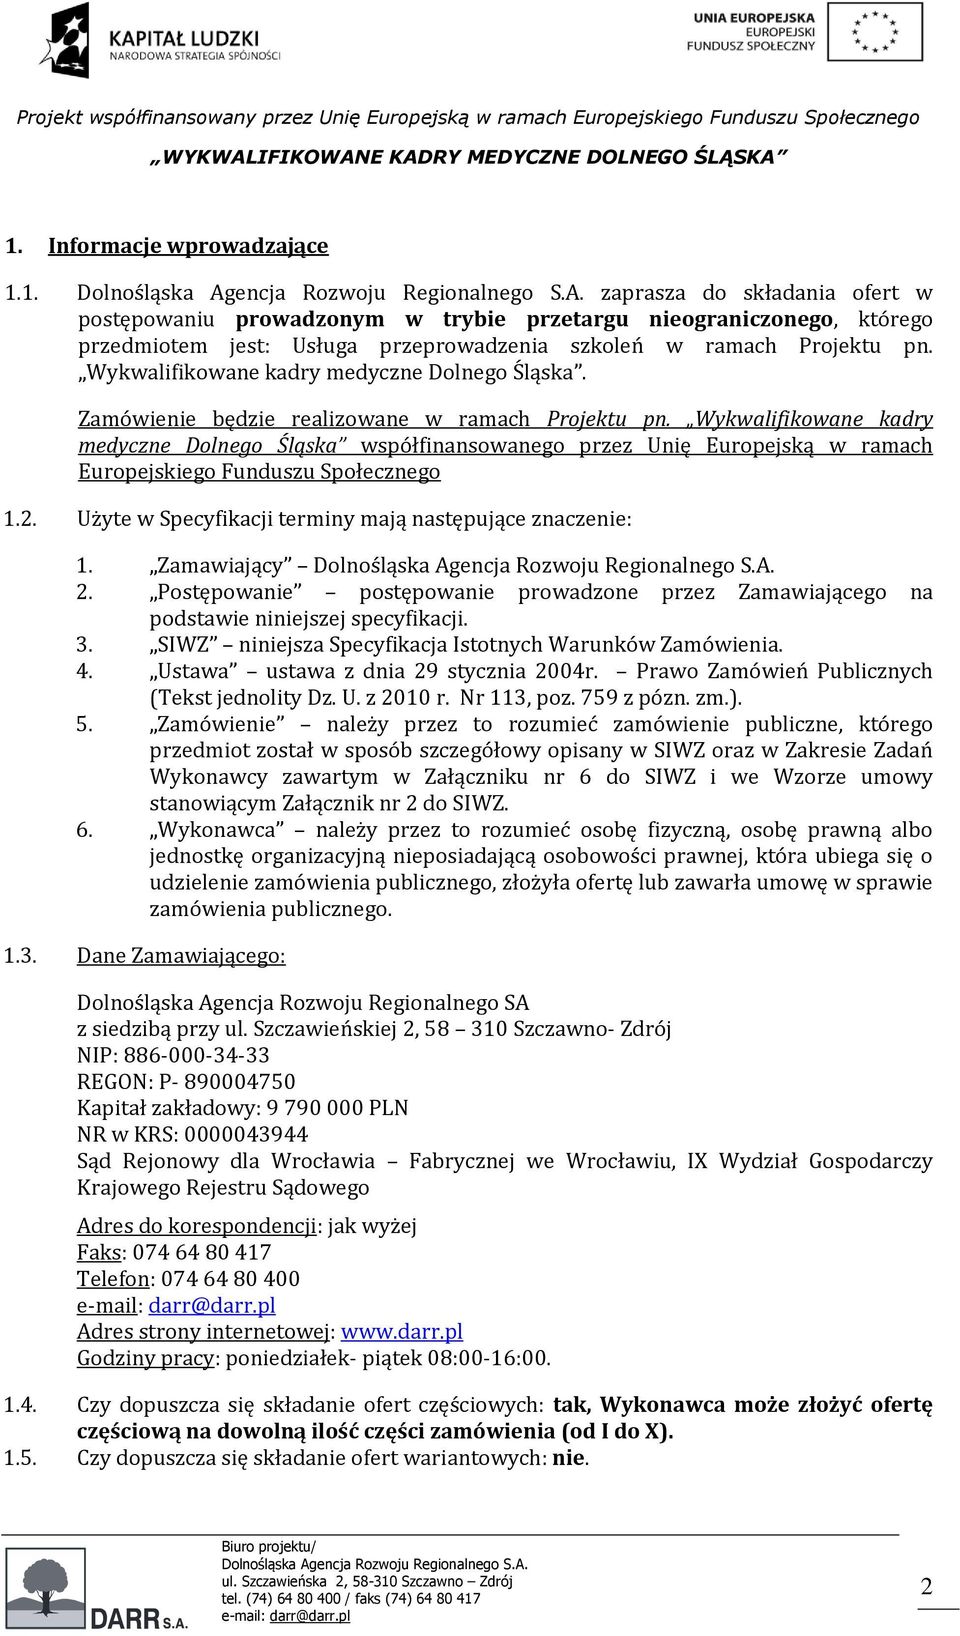 Wykwalifikowane kadry medyczne Dolnego Śląska współfinansowanego przez Unię Europejską w ramach Europejskiego Funduszu Społecznego 1.2. Użyte w Specyfikacji terminy mają następujące znaczenie: 1.